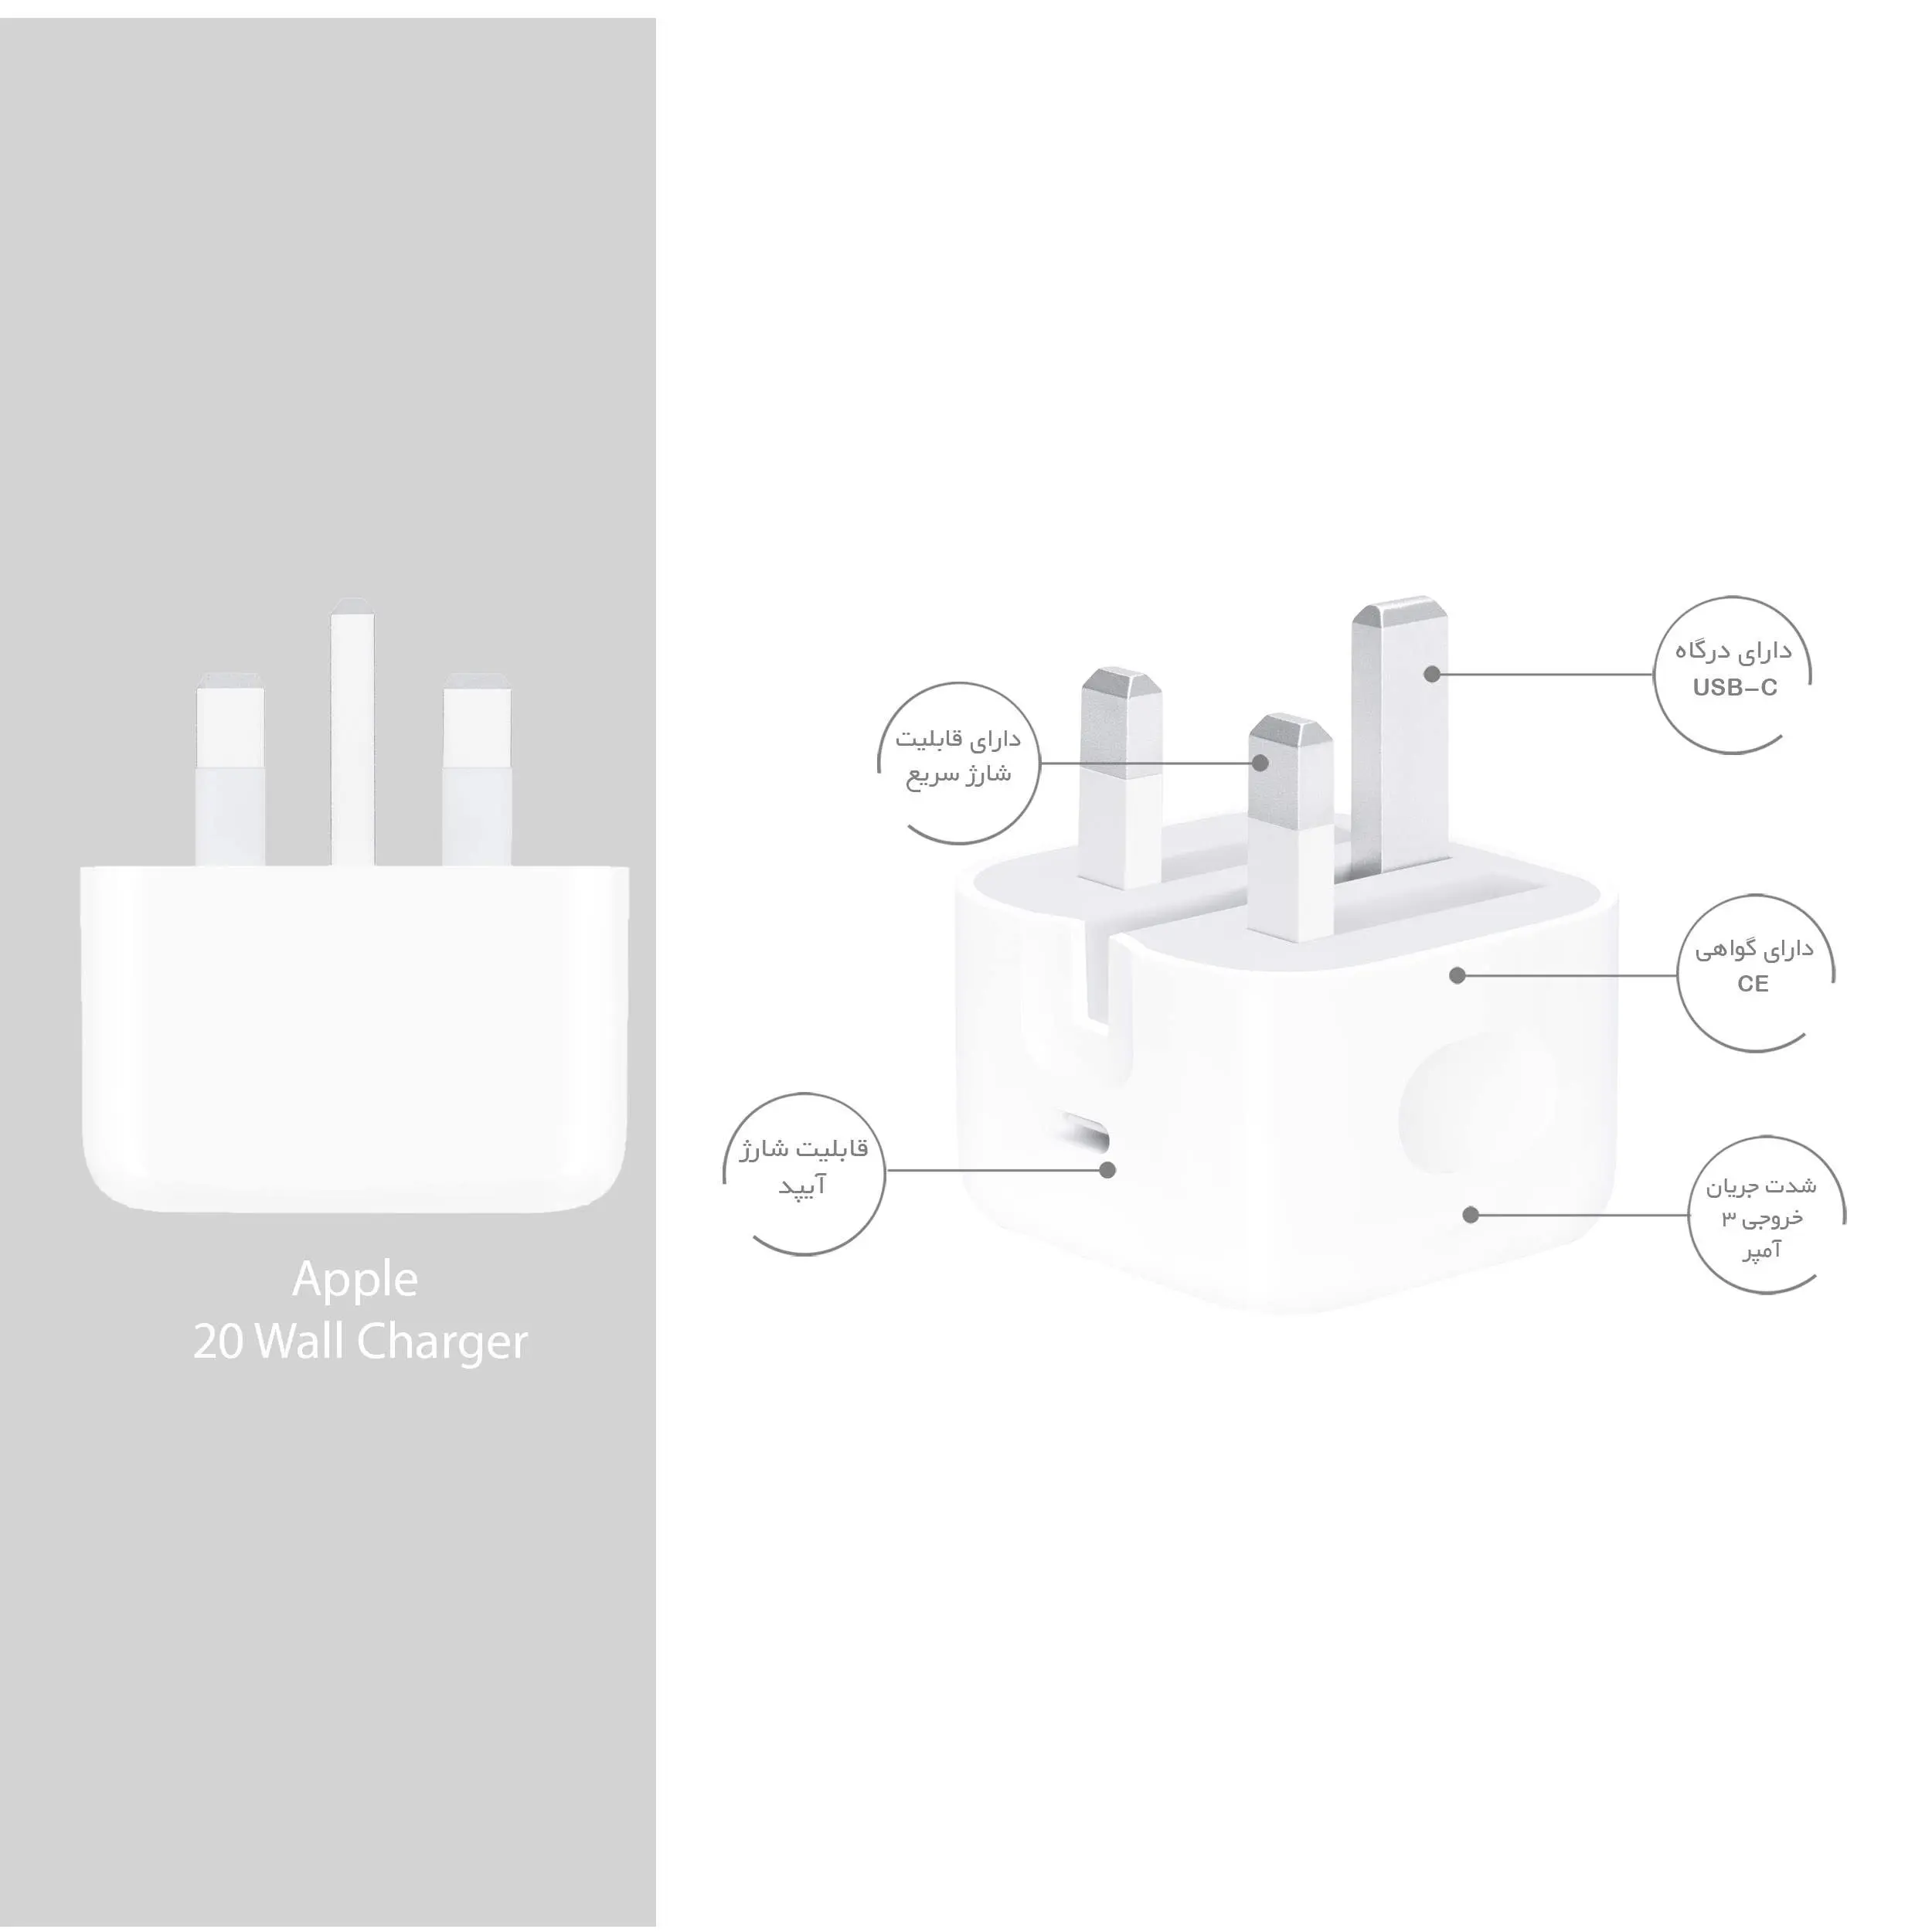 شارژر دیواری اپل مدل 20 وات / Apple 20 Watt Wall Charger 